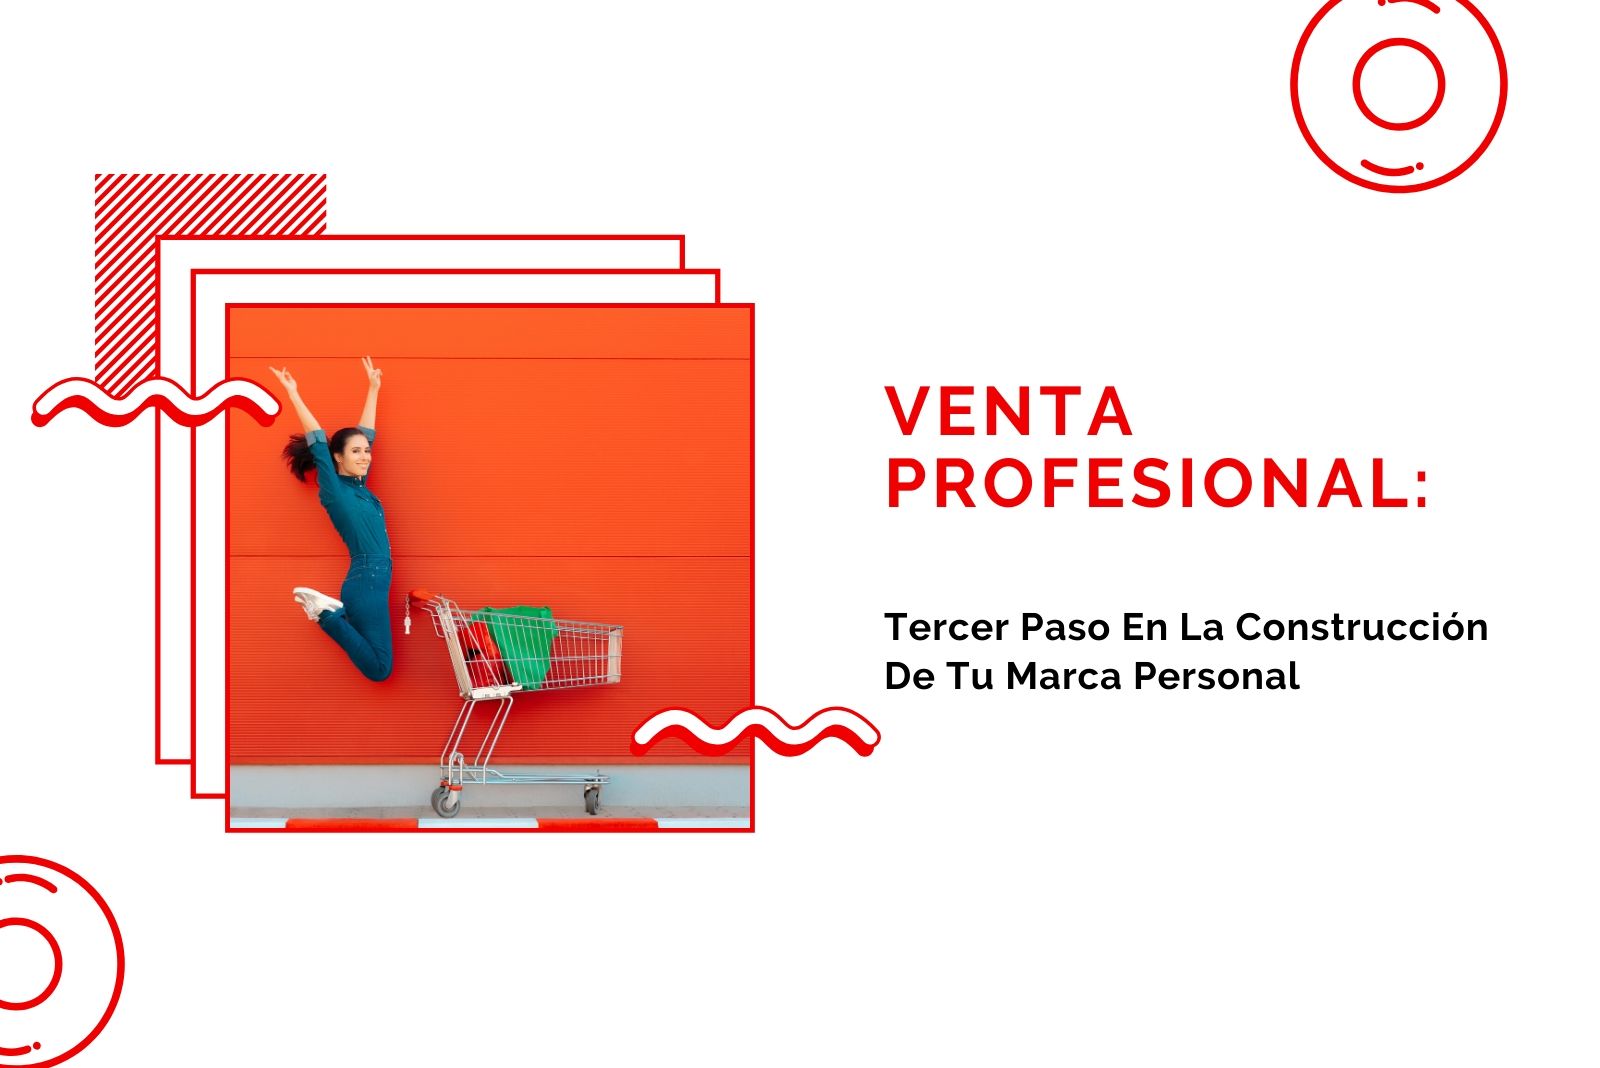 Hector-Jimenez-Venta-Profesional_-Tercer-Paso-En-La-Construcción-De-Tu-Marca-Personal-1